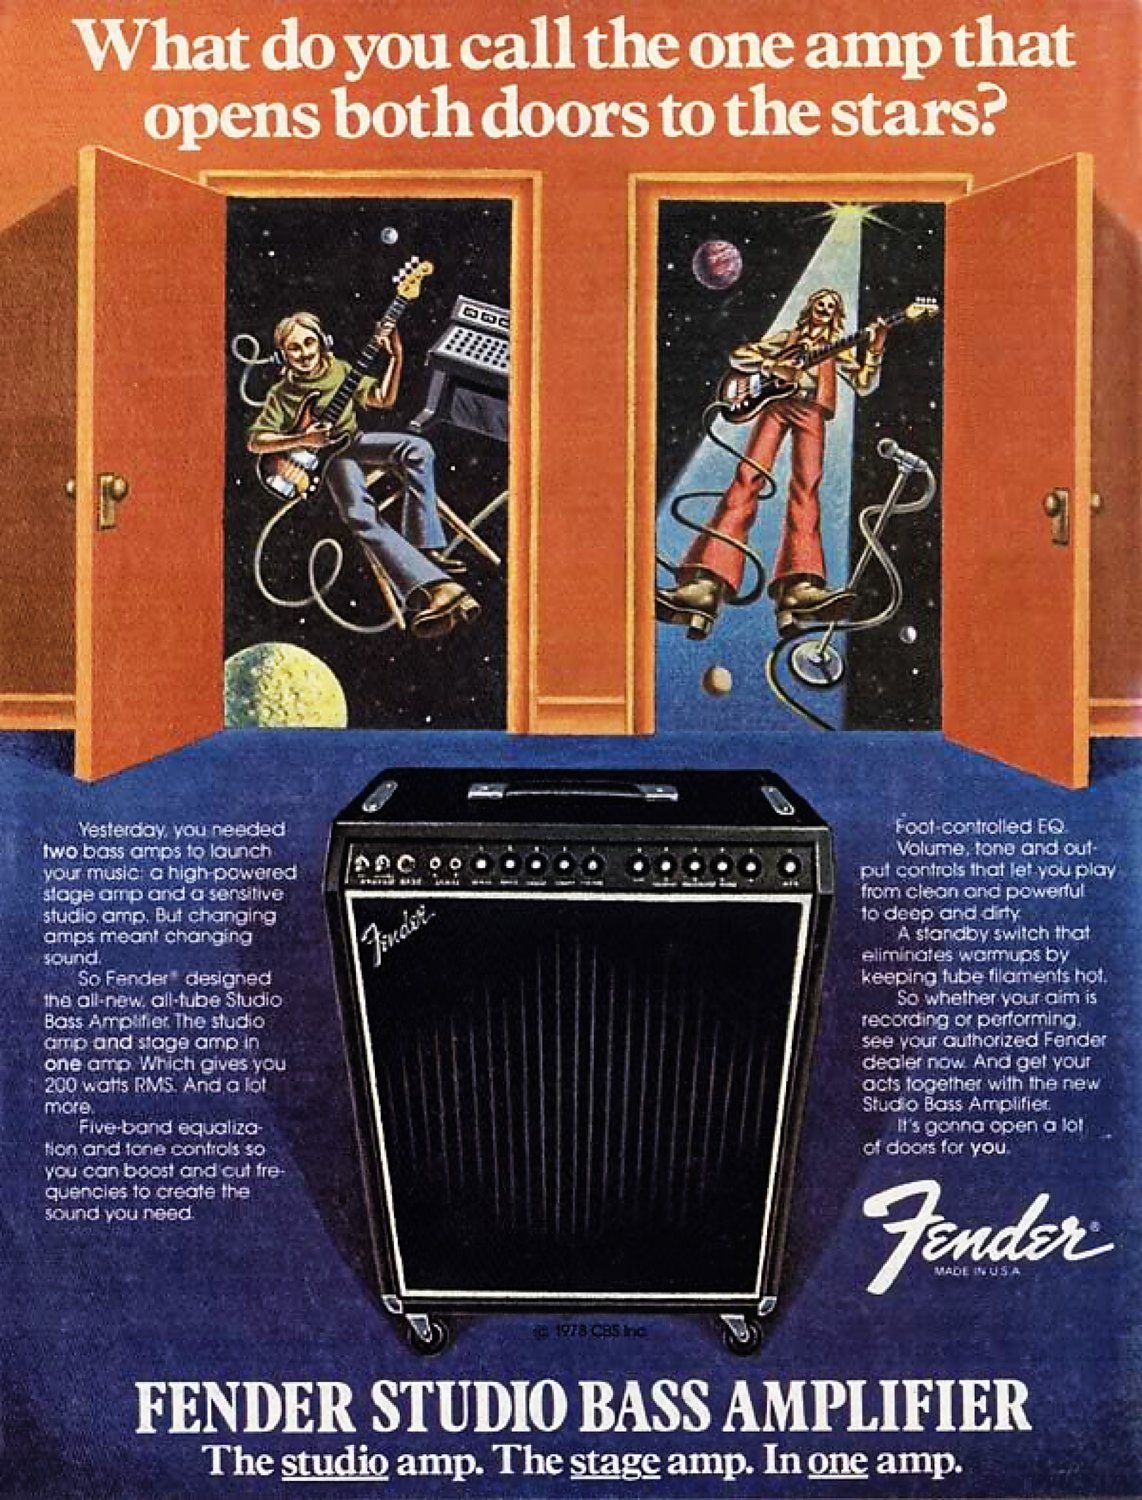 FenderStudioBassAmplifier1978advert_DxO.jpg